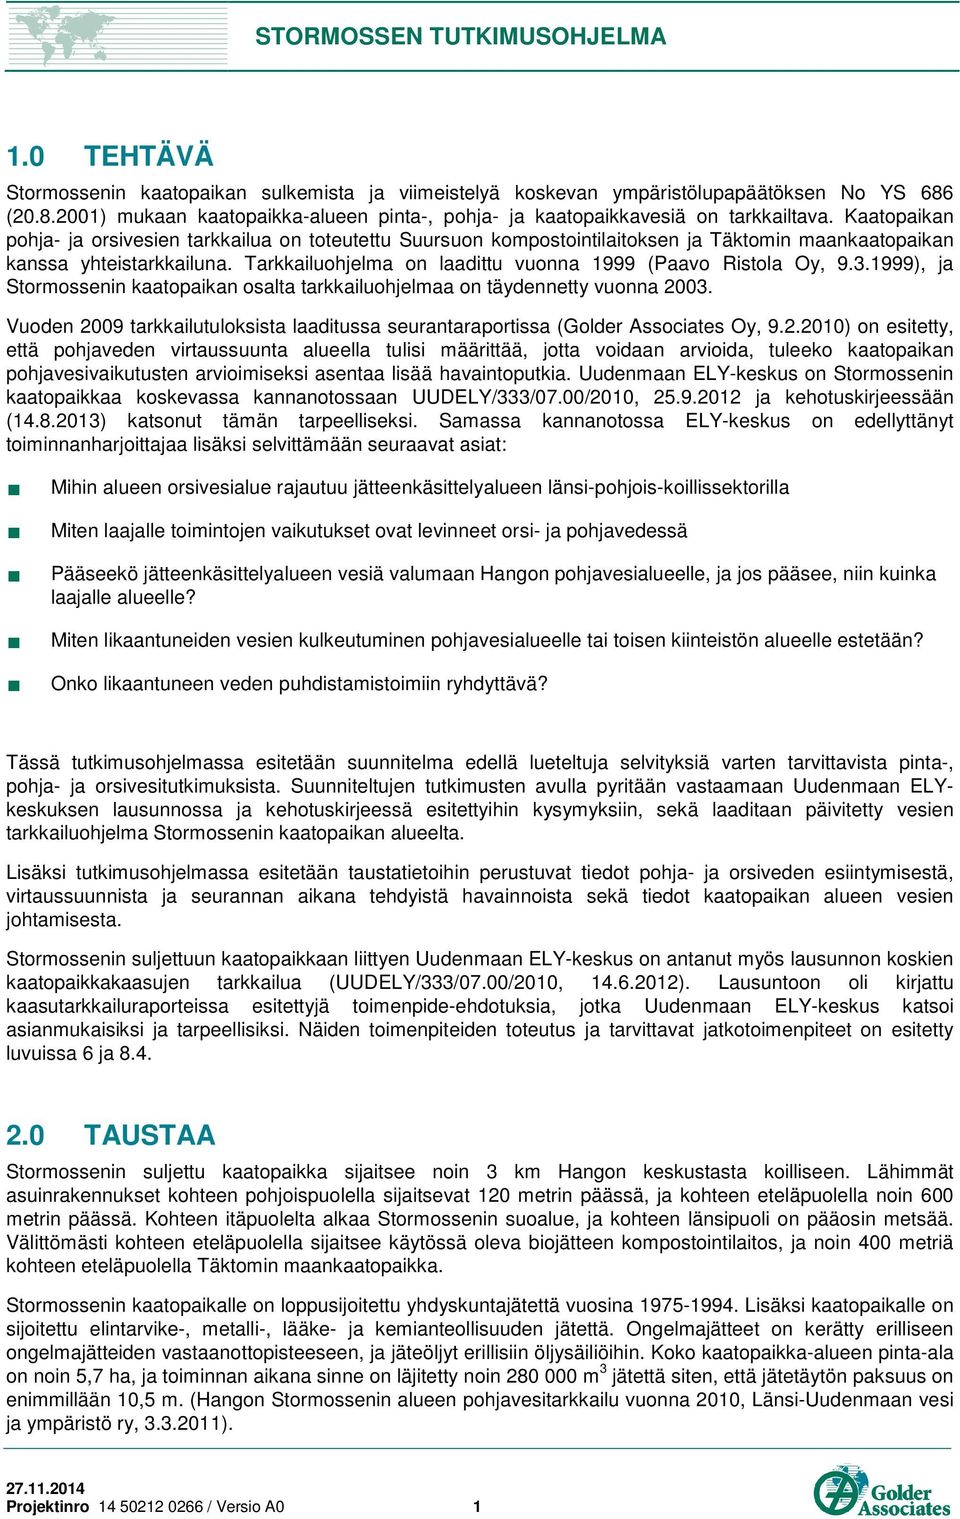 Tarkkailuohjelma on laadittu vuonna 1999 (Paavo Ristola Oy, 9.3.1999), ja Stormossenin kaatopaikan osalta tarkkailuohjelmaa on täydennetty vuonna 2003.